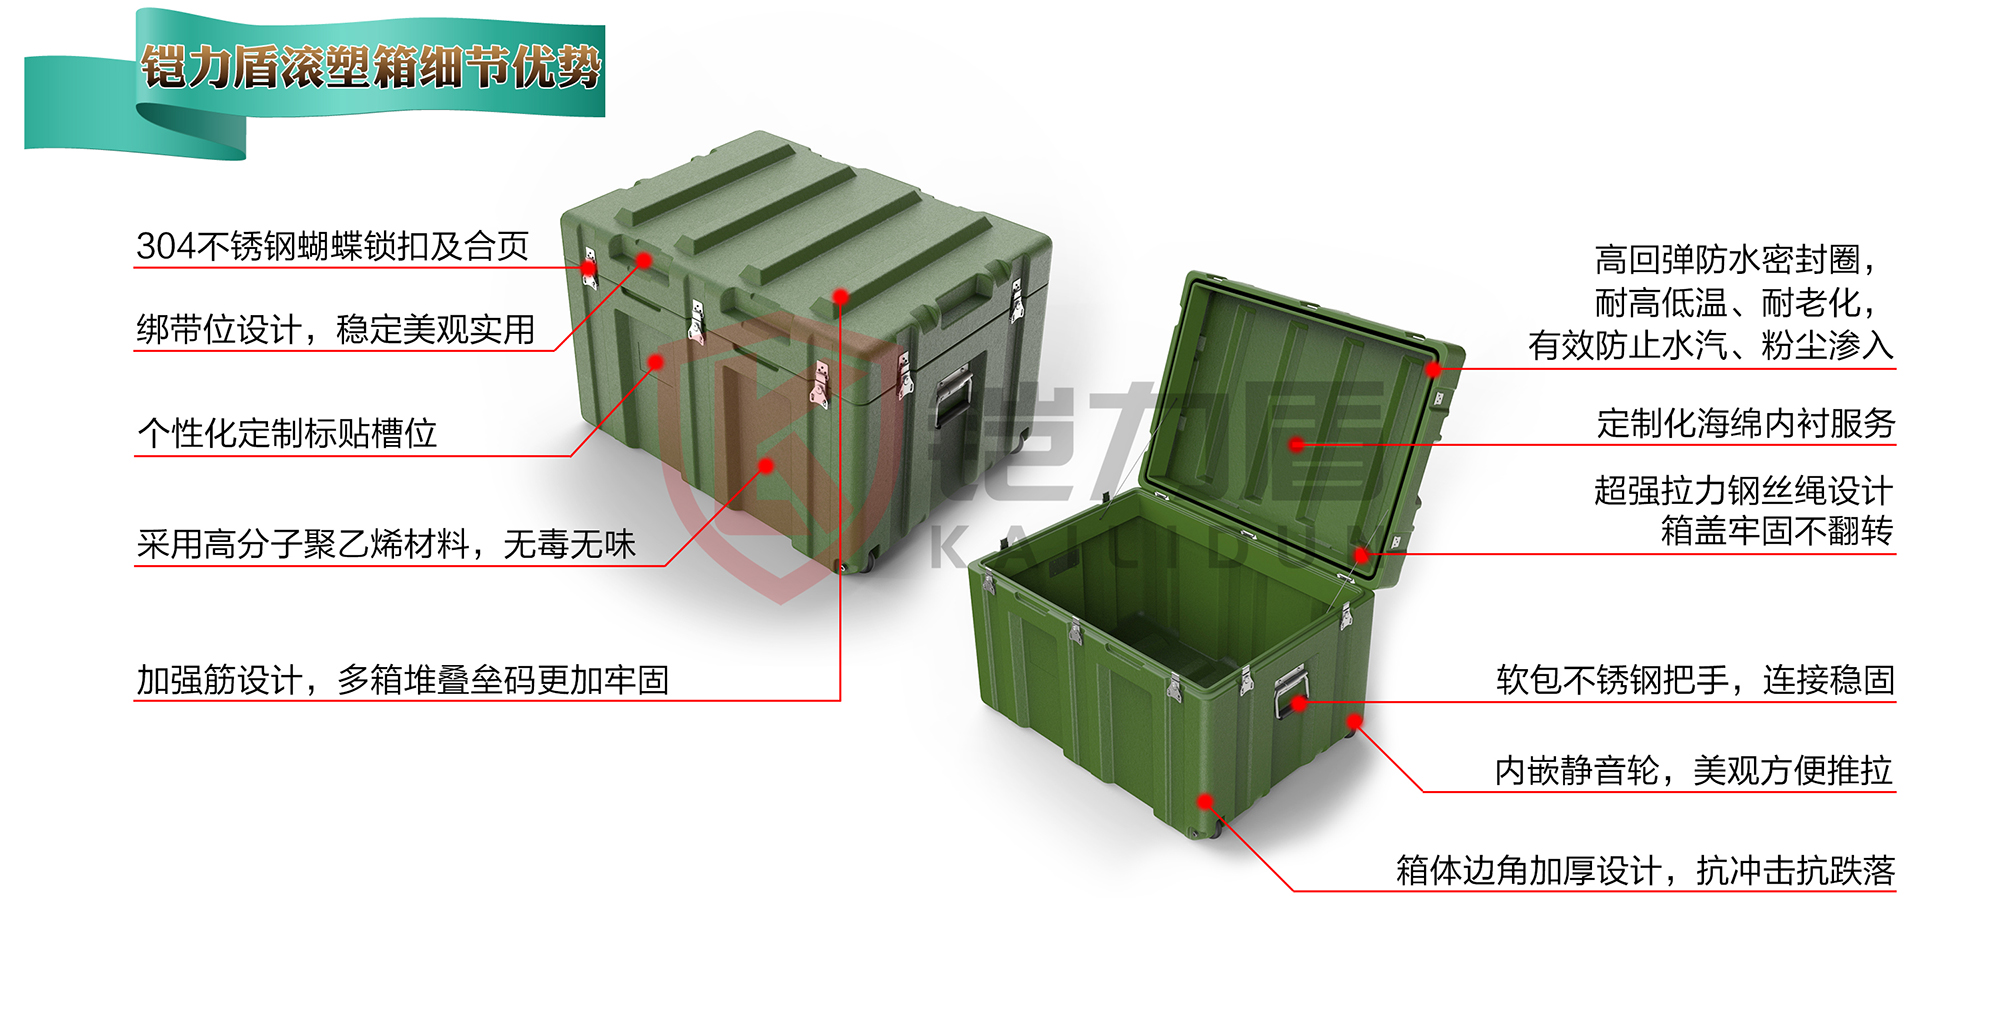 铠力盾野战作业指挥箱- 政治工作系列- 上海铠力盾塑料科技有限公司